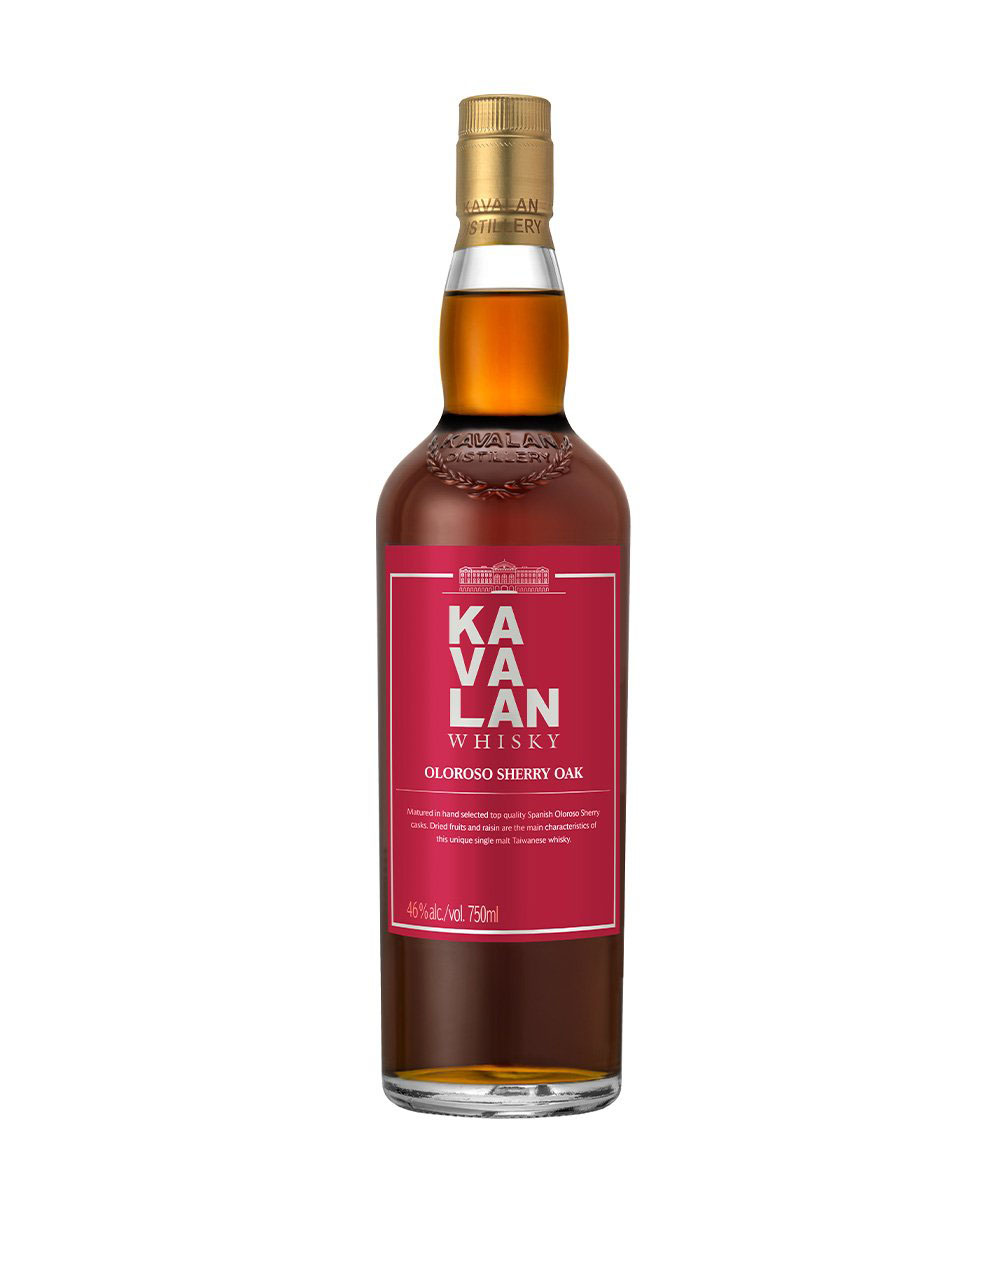 Laphroaig Cairdeas 2017 Edition Islay Single Malt Scotch Whisky